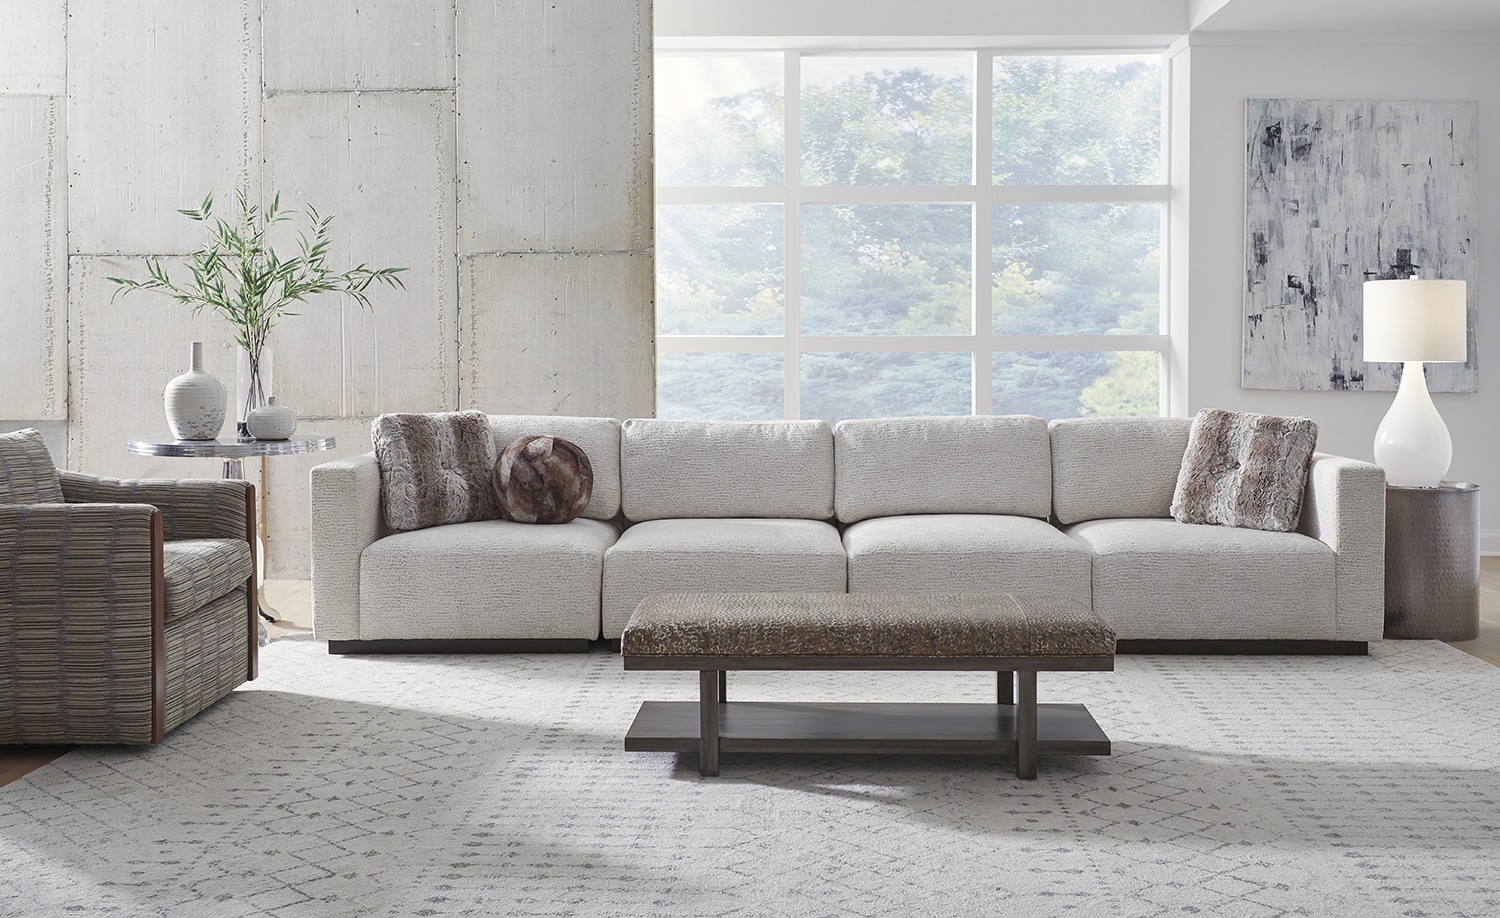 BY DESIGN furniture & interior design Mighty-Mod_Venus_Henley